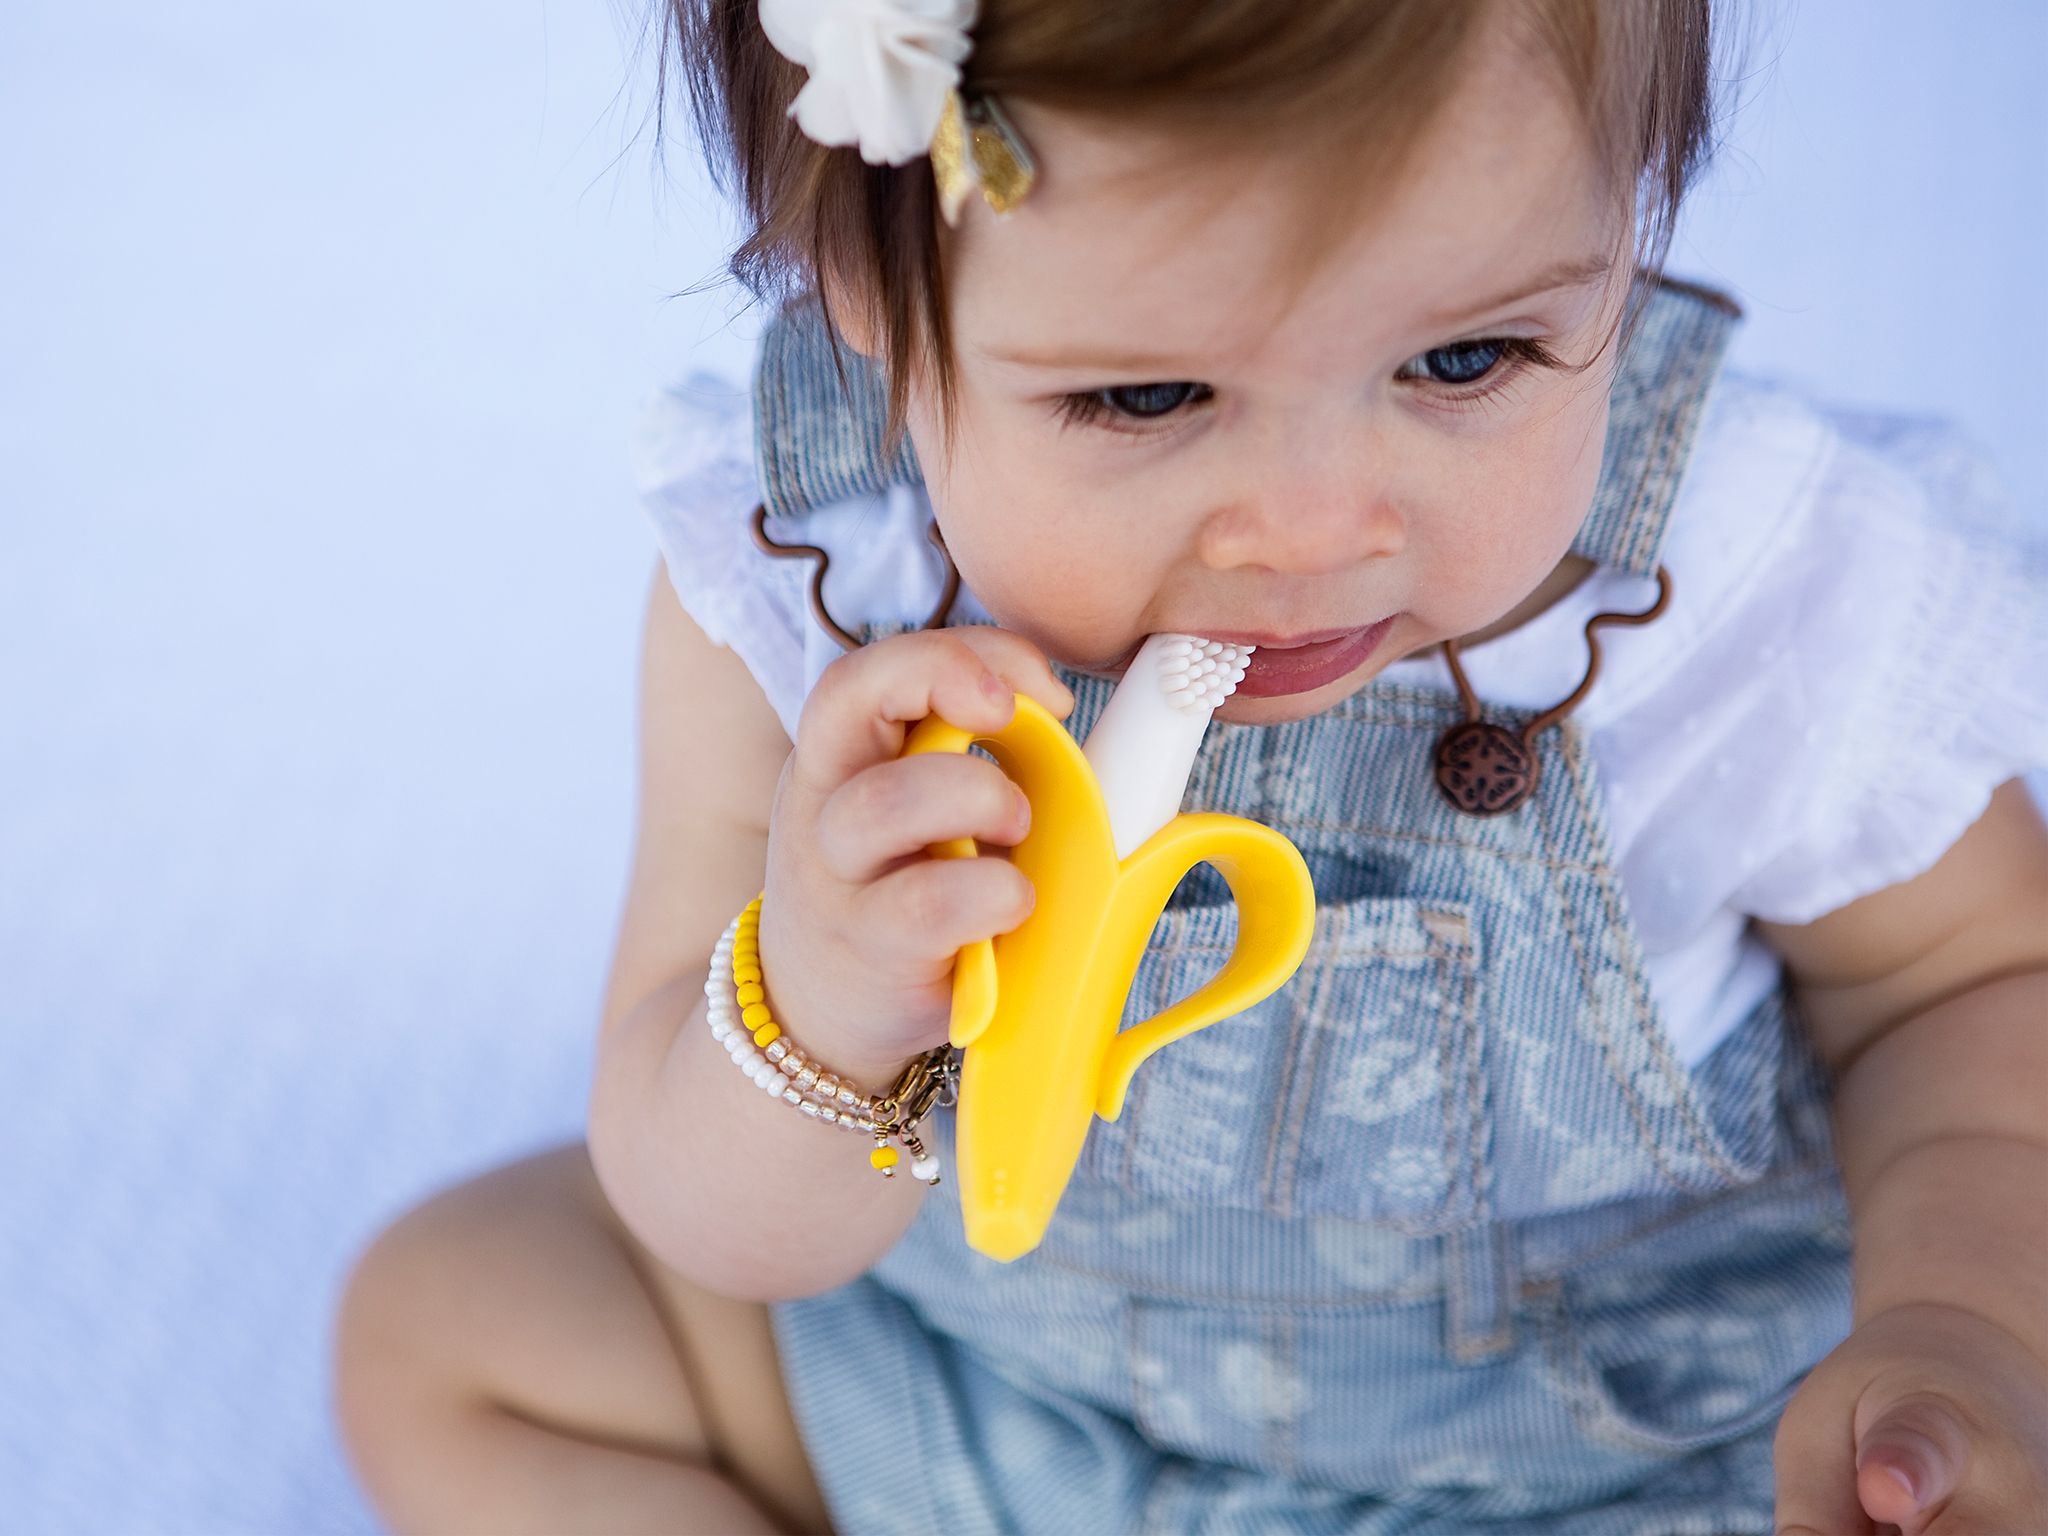 Girl uses yellow Baby Banana Brush